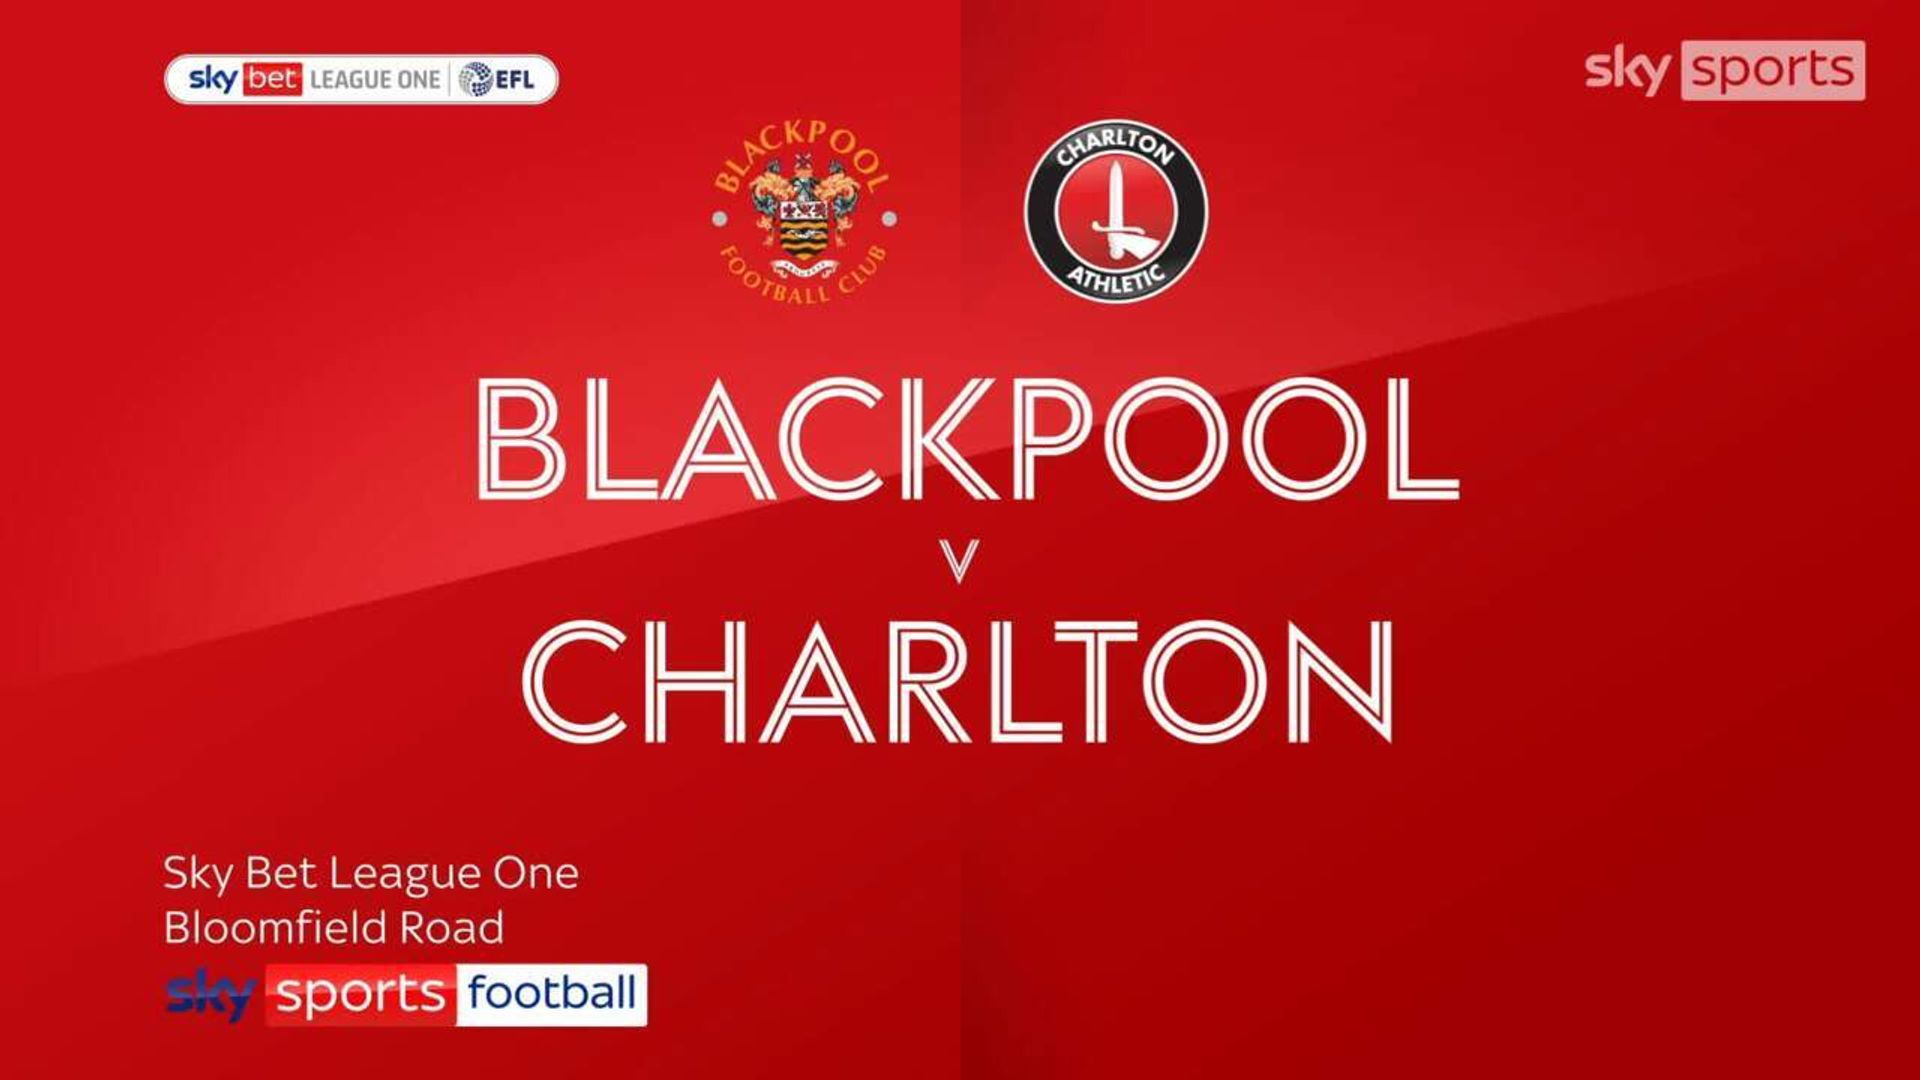 Blackpool 1-1 Charlton